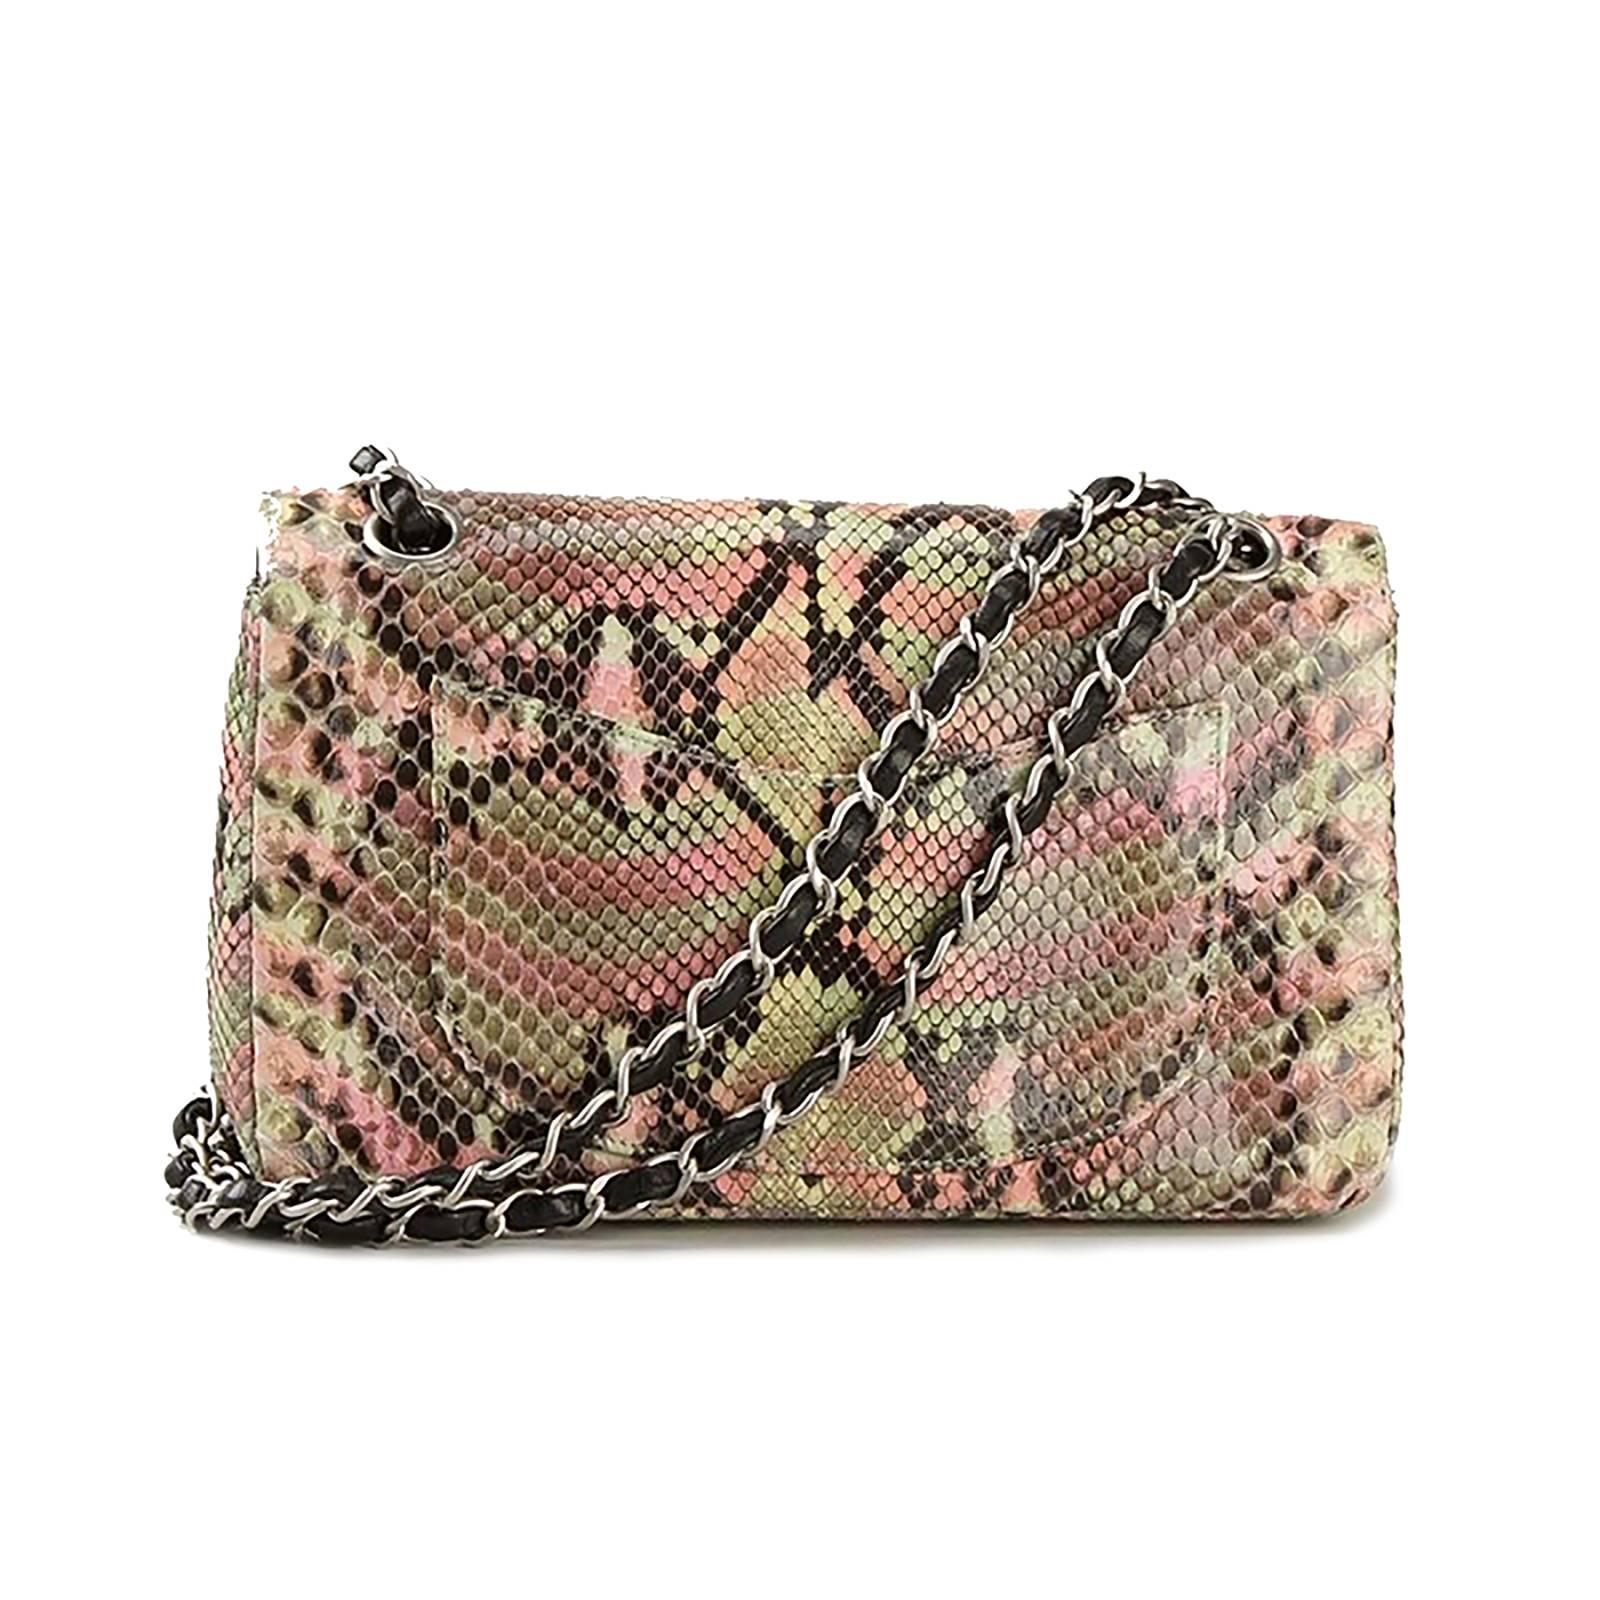 Brown Chanel Python 2.55 Handbag